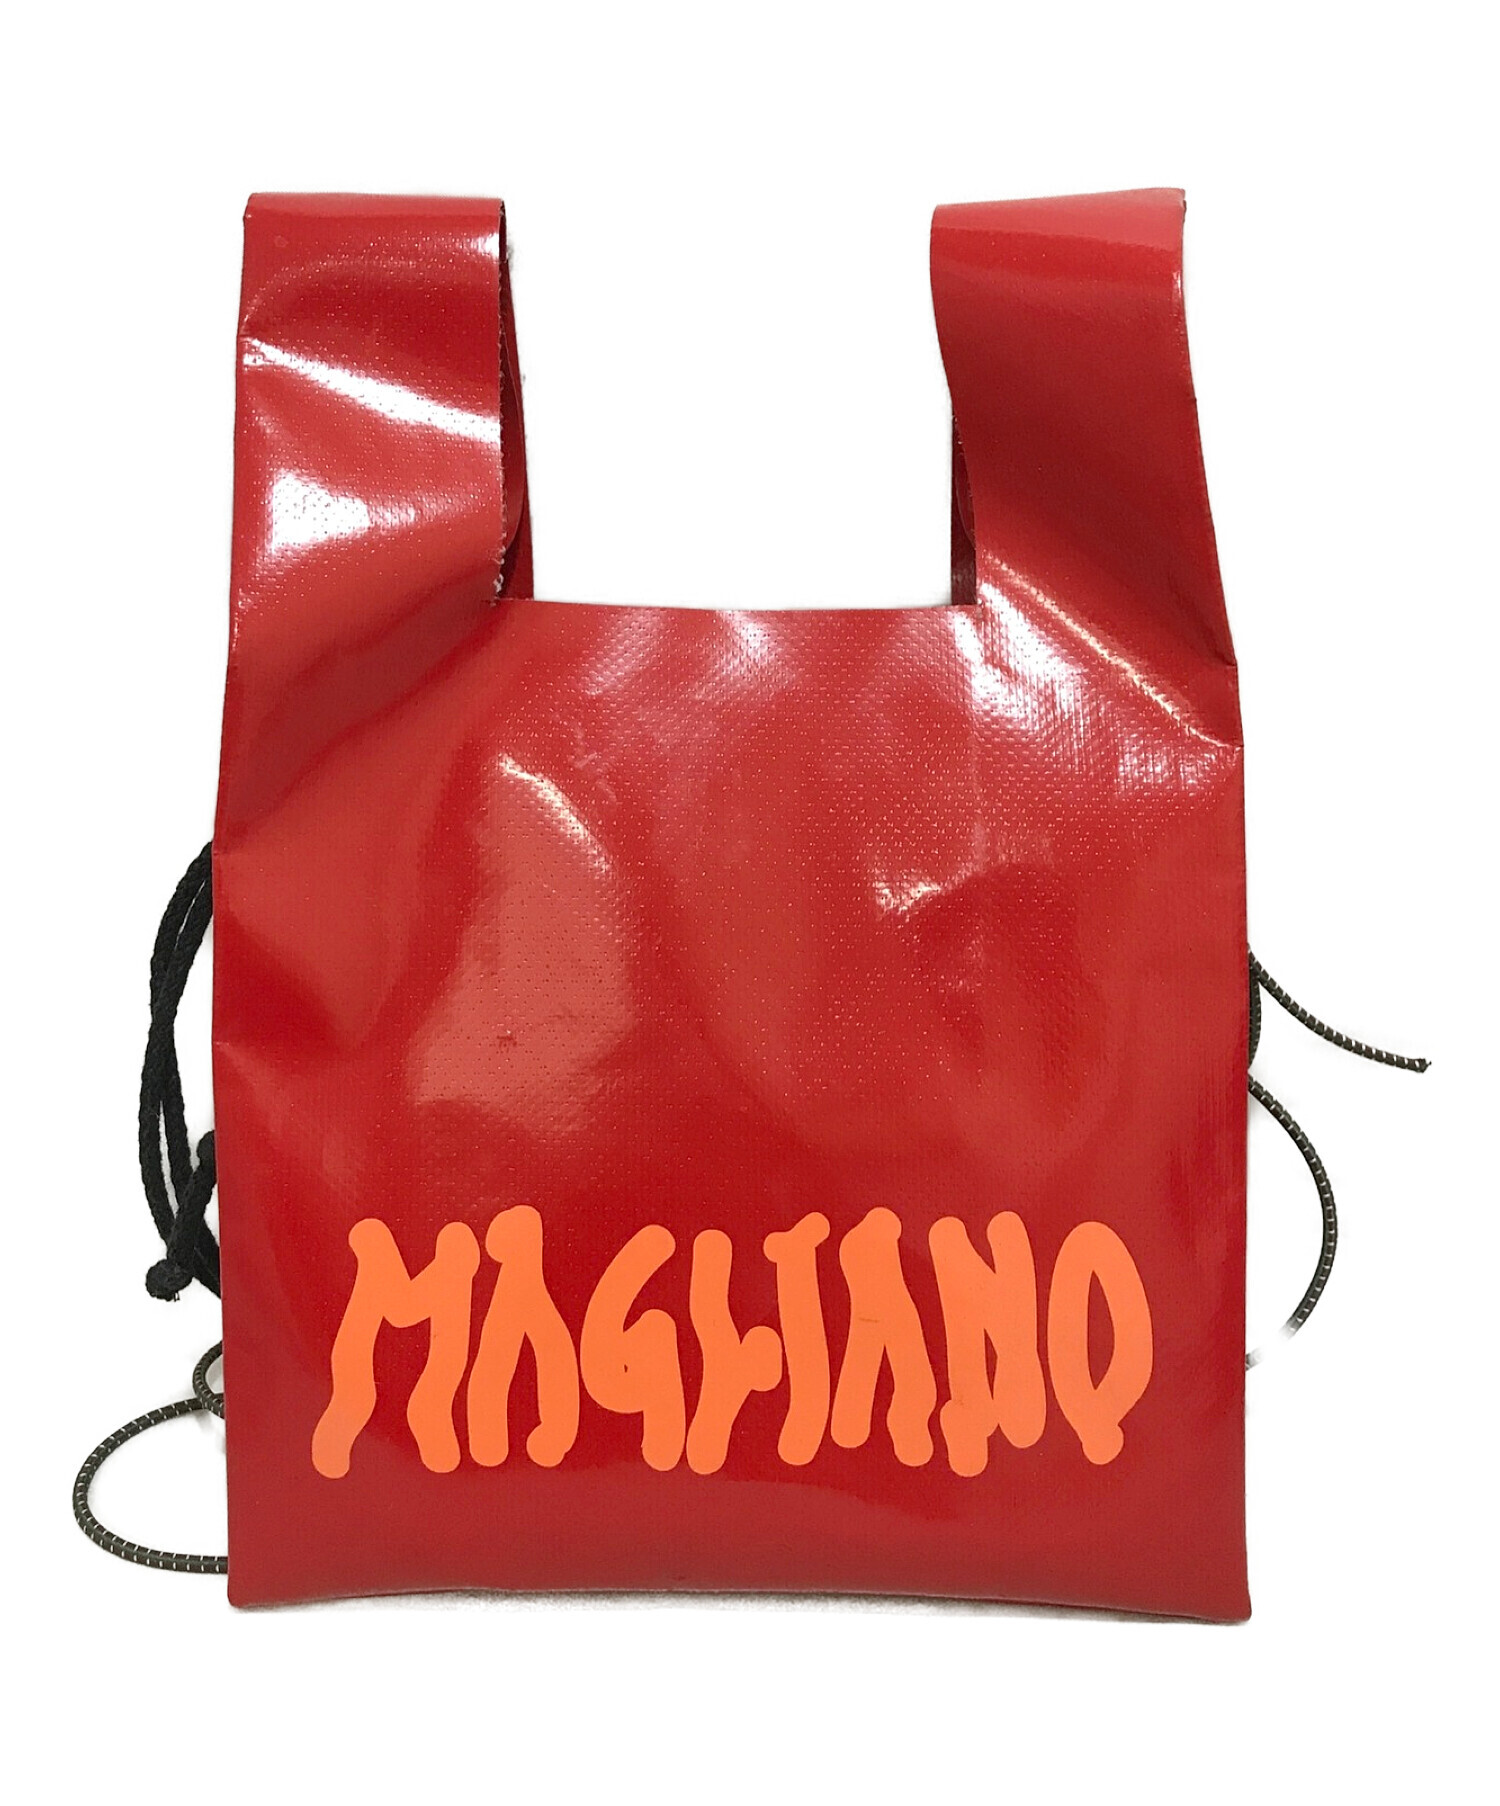 Magliano マリアーノ バッグ | gualterhelicopteros.com.br